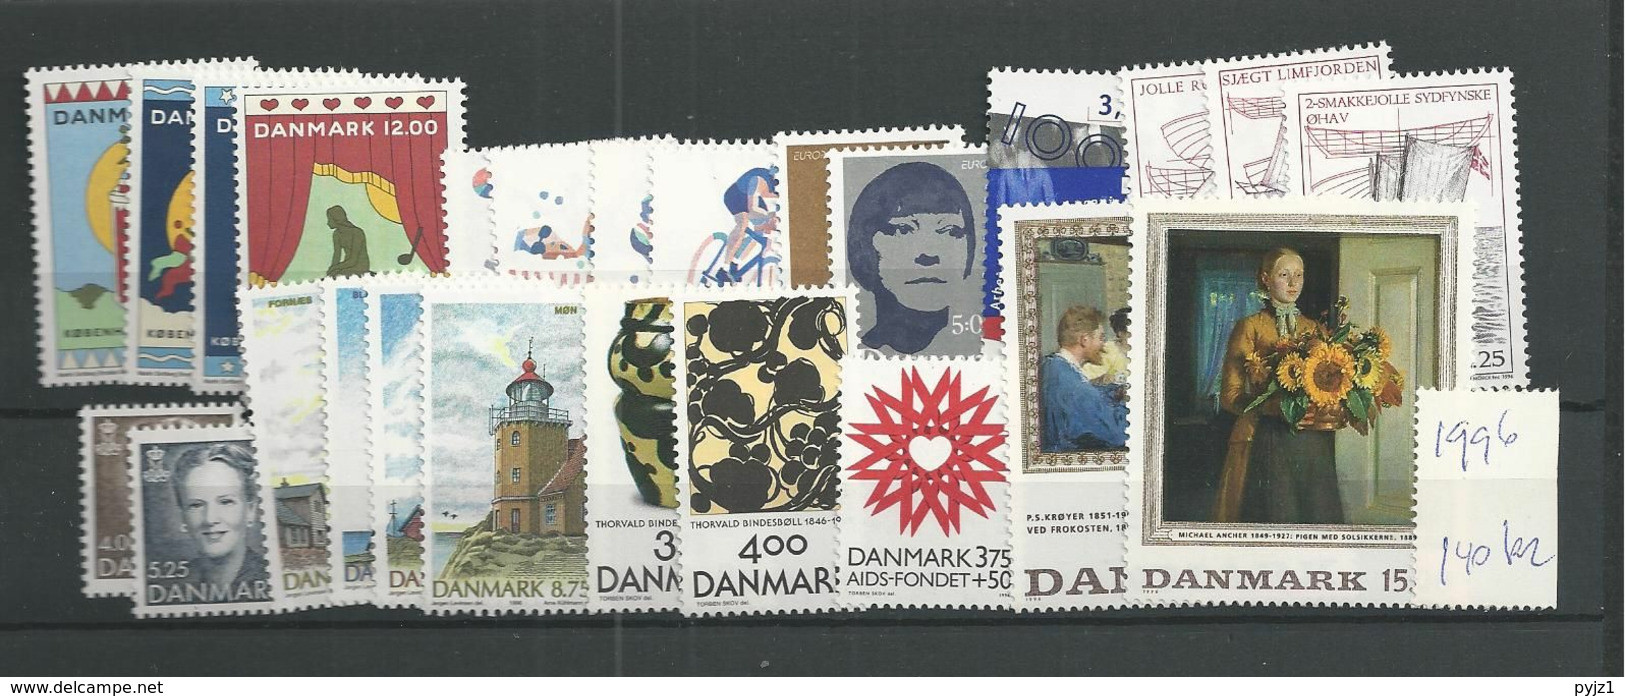 1996 MNH Denmark, Dänemark, Year Complete, Postfris - Full Years